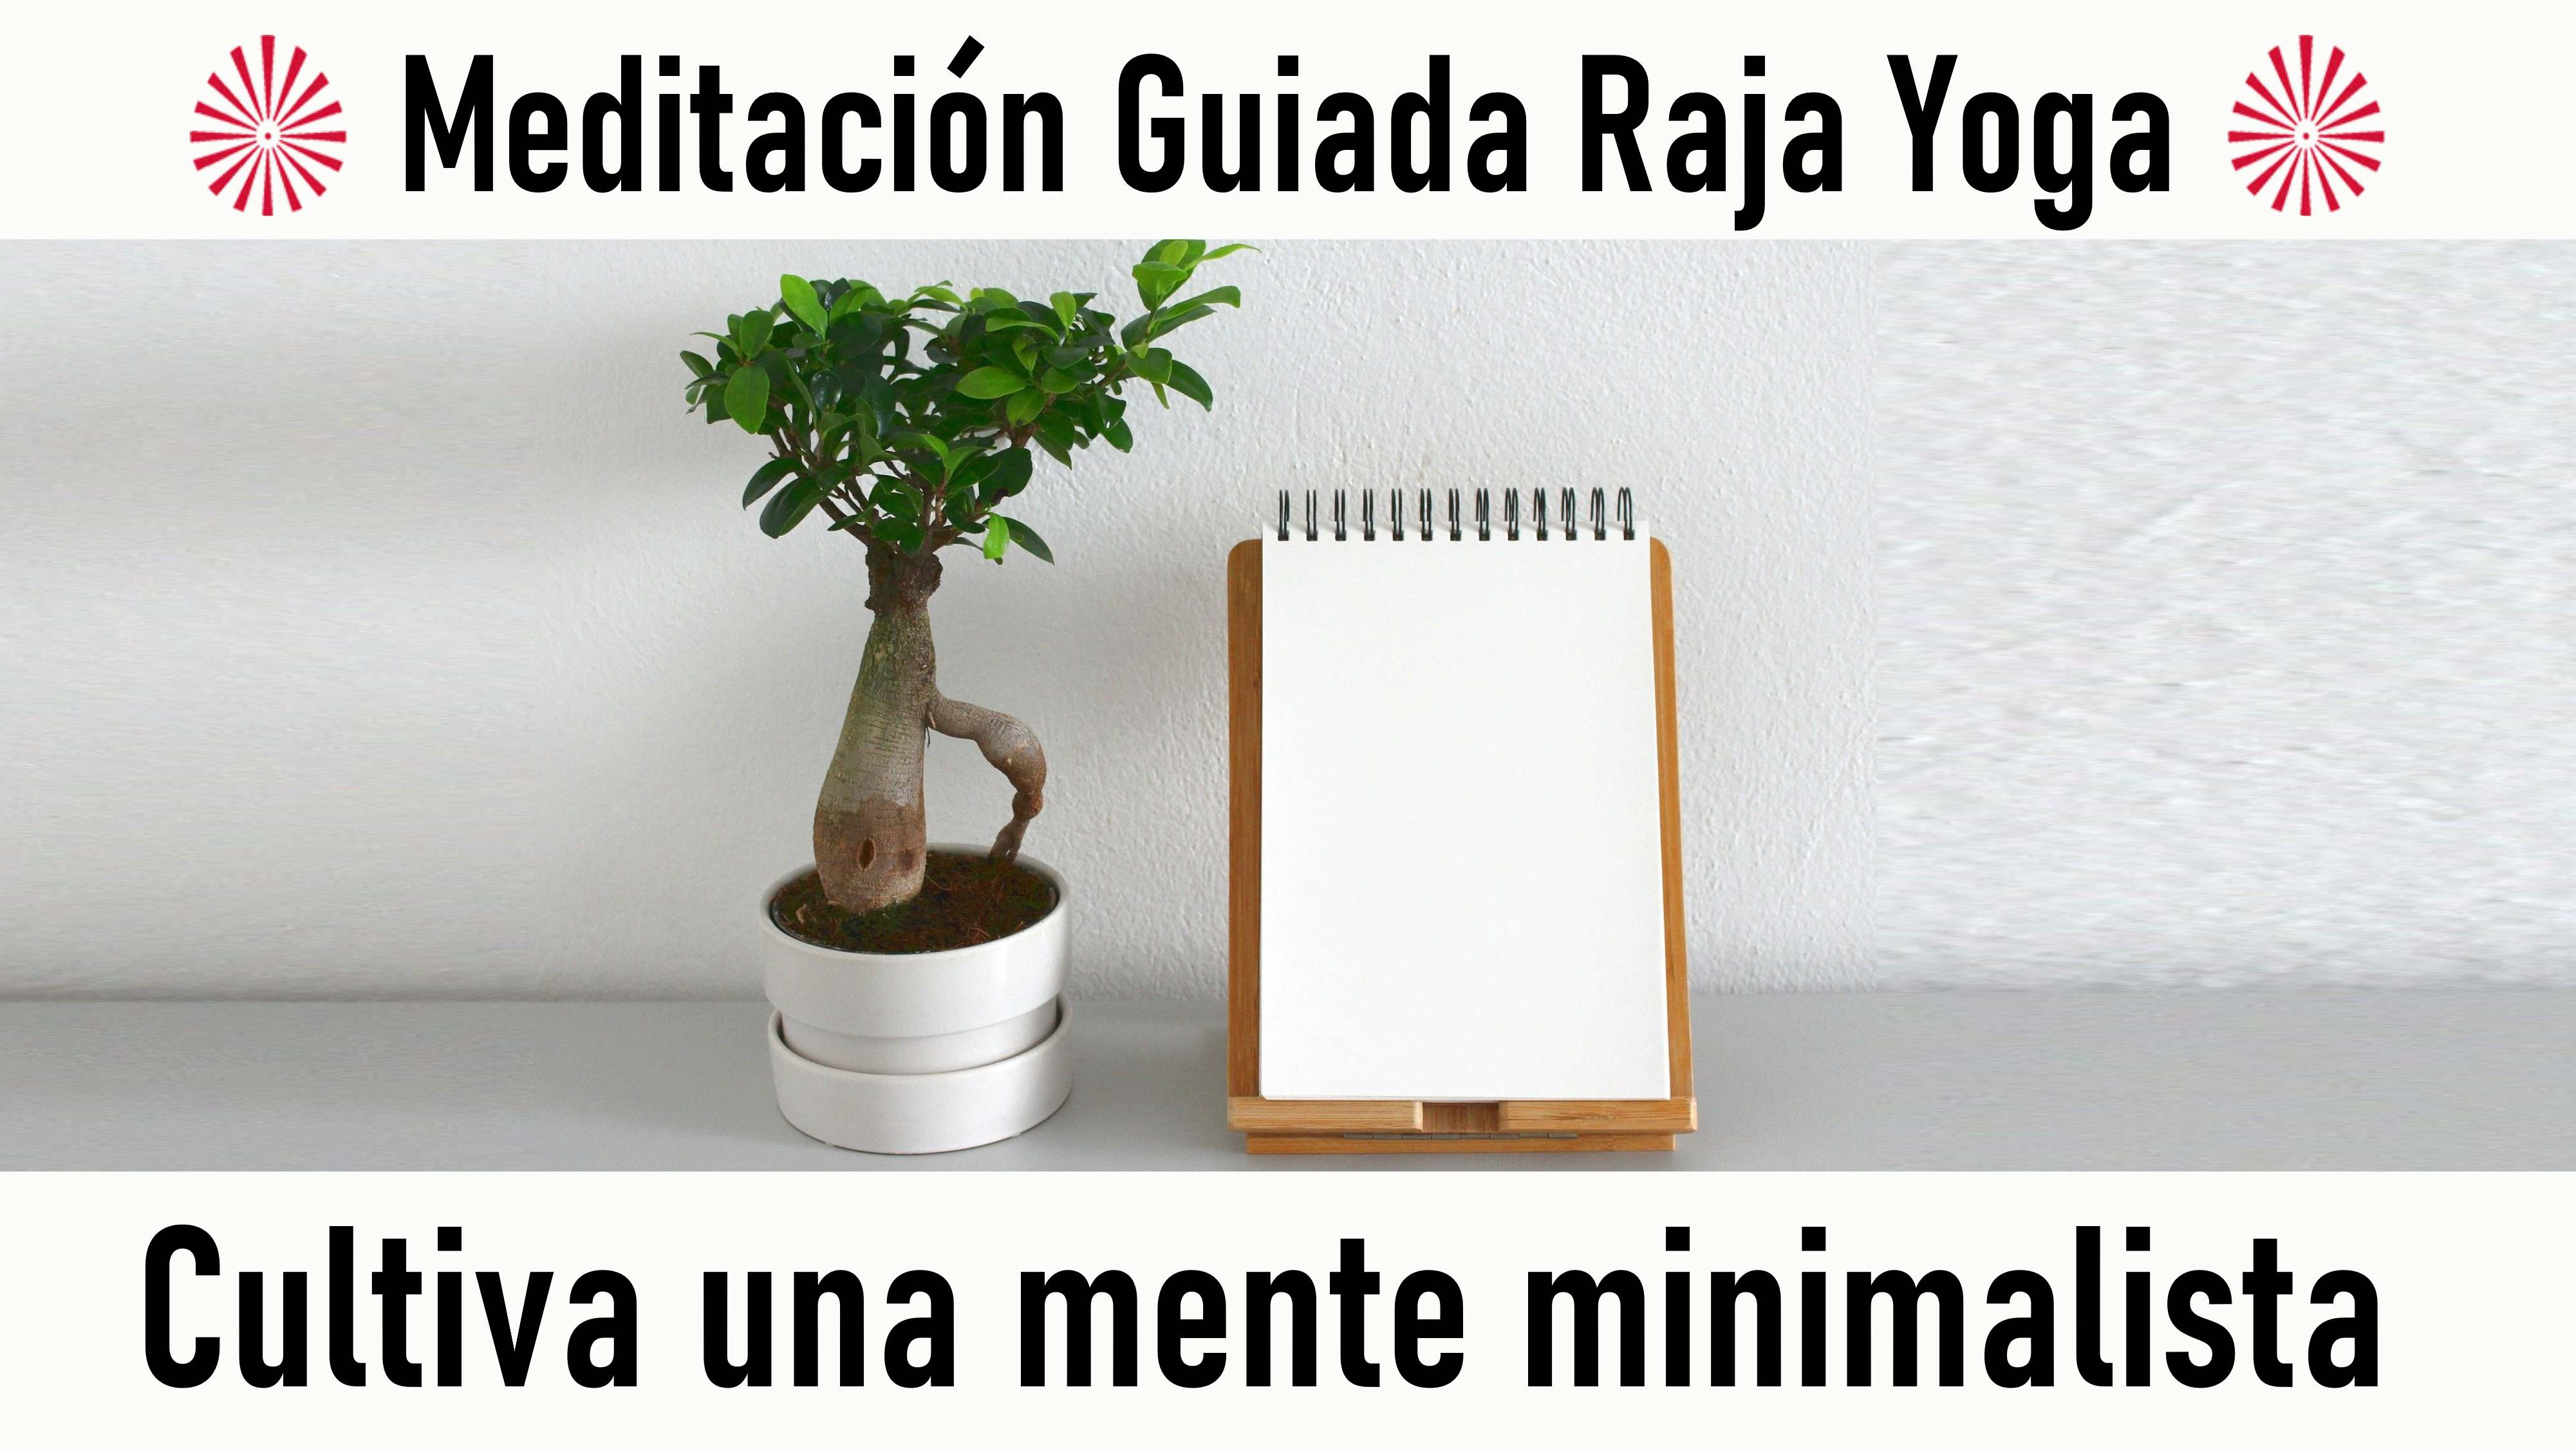 Meditación Raja Yoga: Cultiva una mente minimalista (24 Agosto 2020) On-line desde Madrid